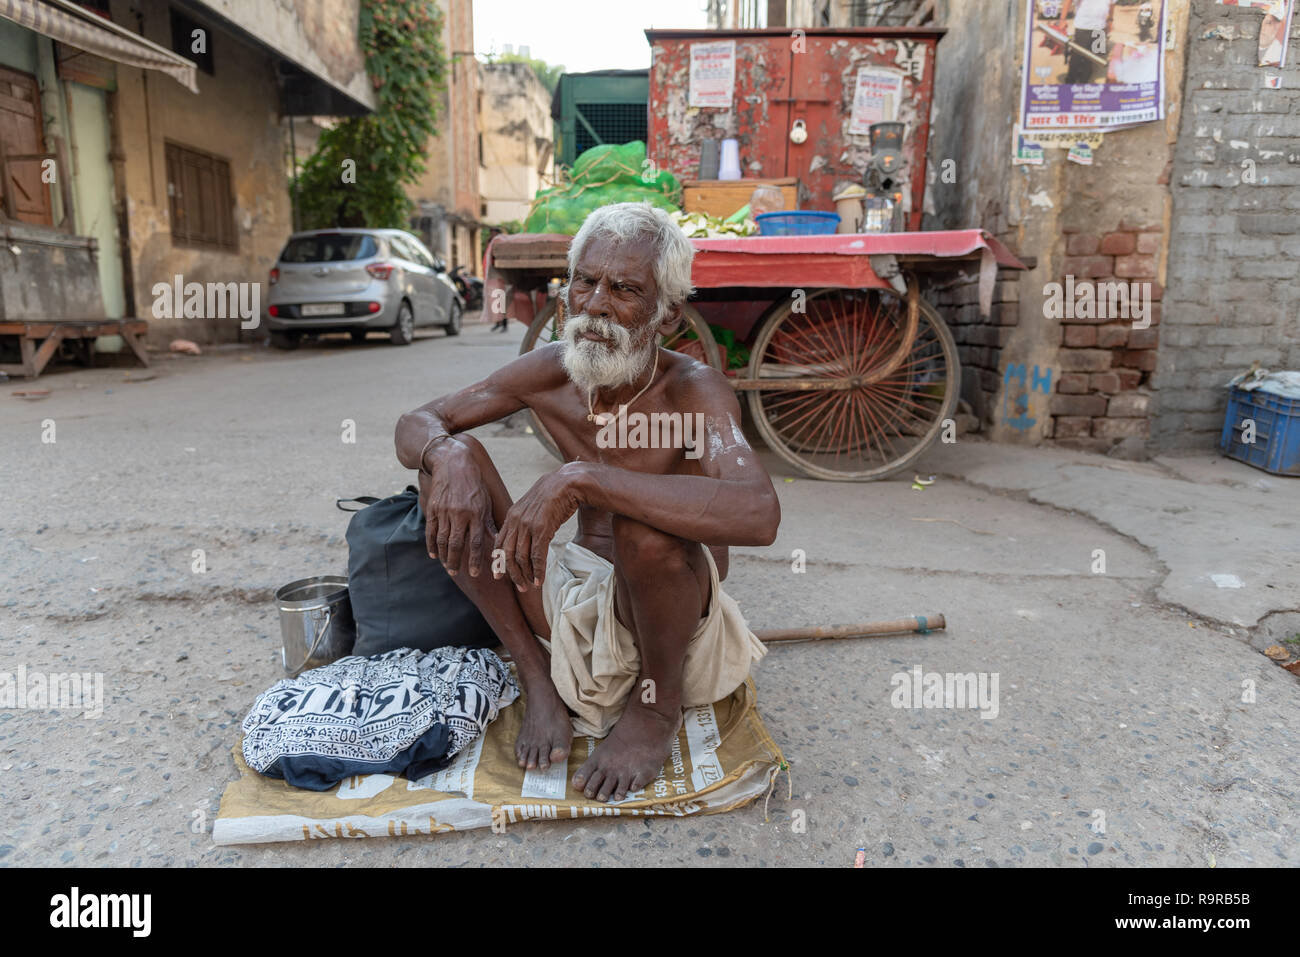 Mendiant indien. Le vieil homme s'est assis sur un sac pour demander des alms, New Delhi, INDE Banque D'Images